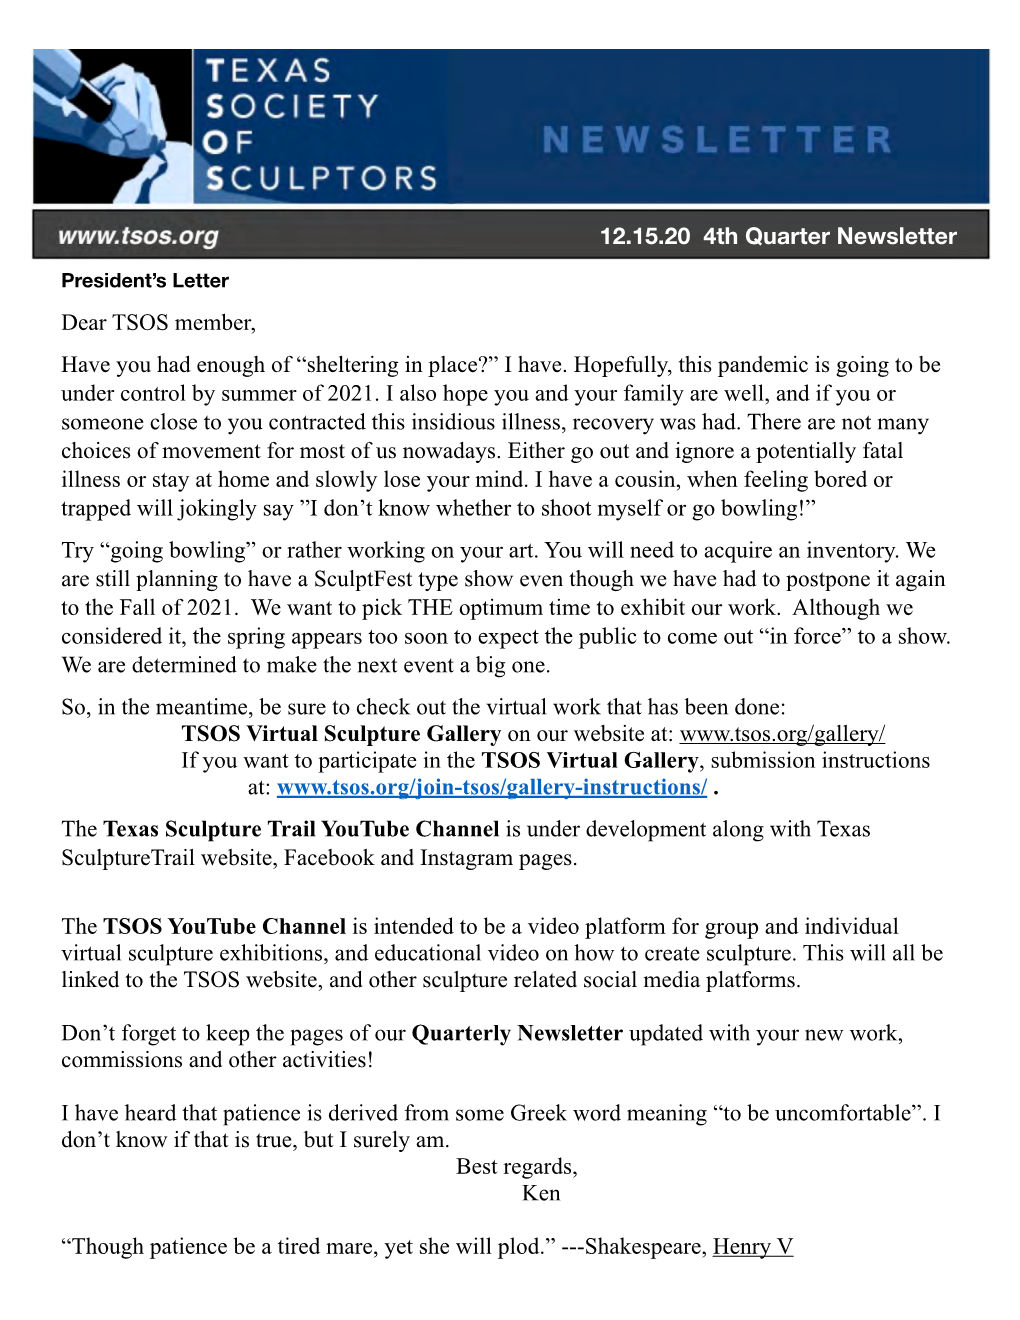 The 2020 TSOS 4Th Quarter Newsletter